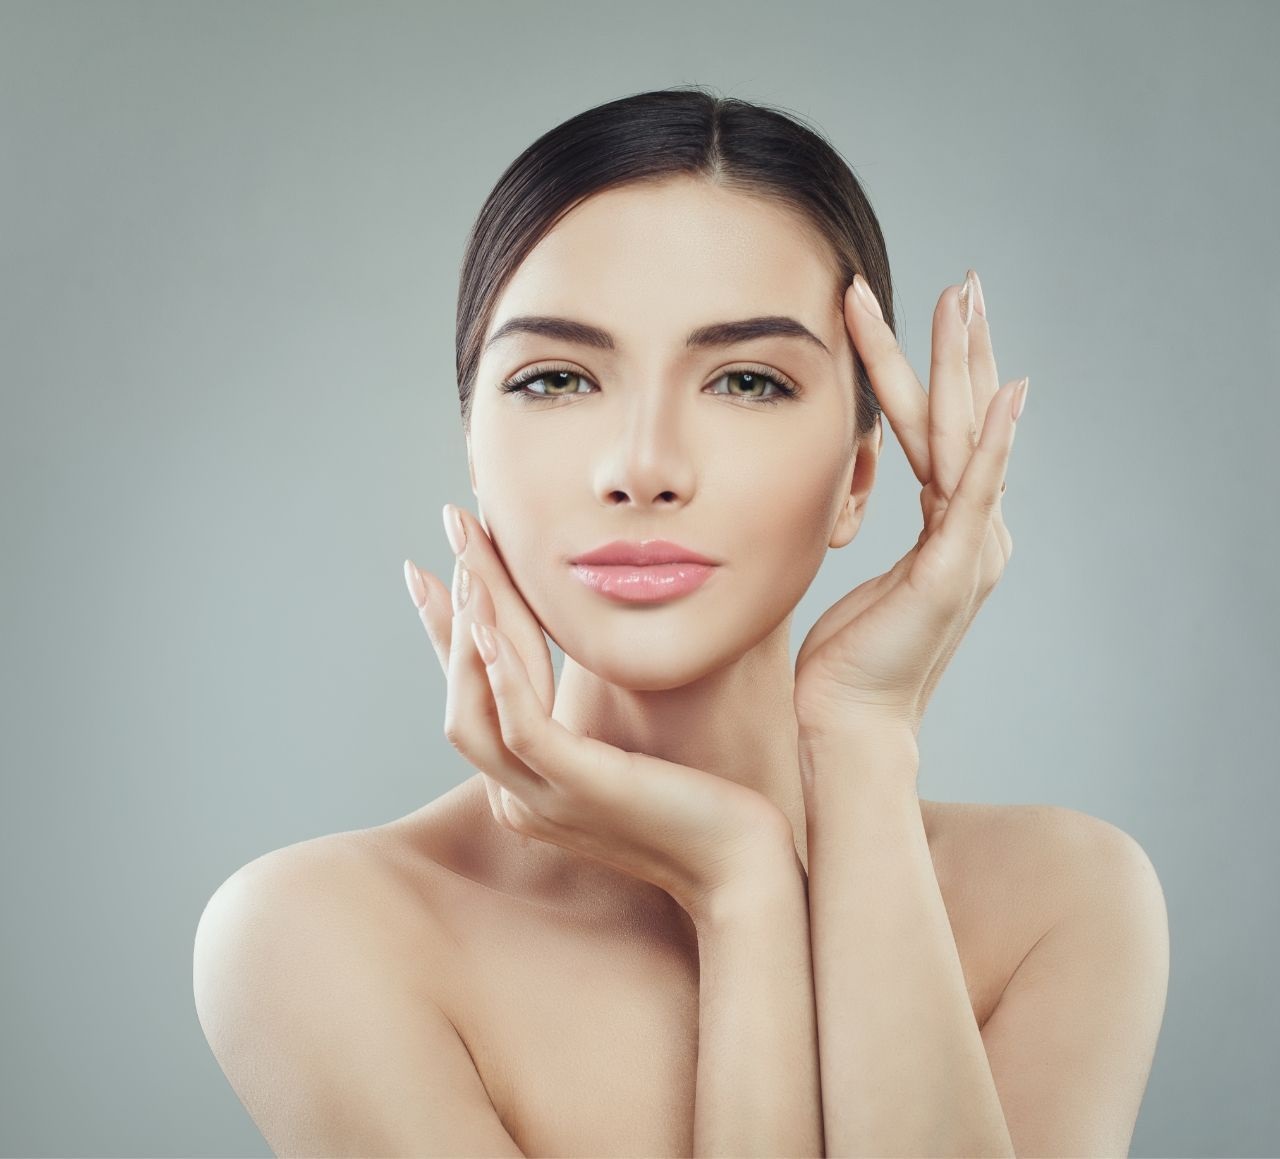 Macchie sulla pelle del viso: come eliminarle naturalmente